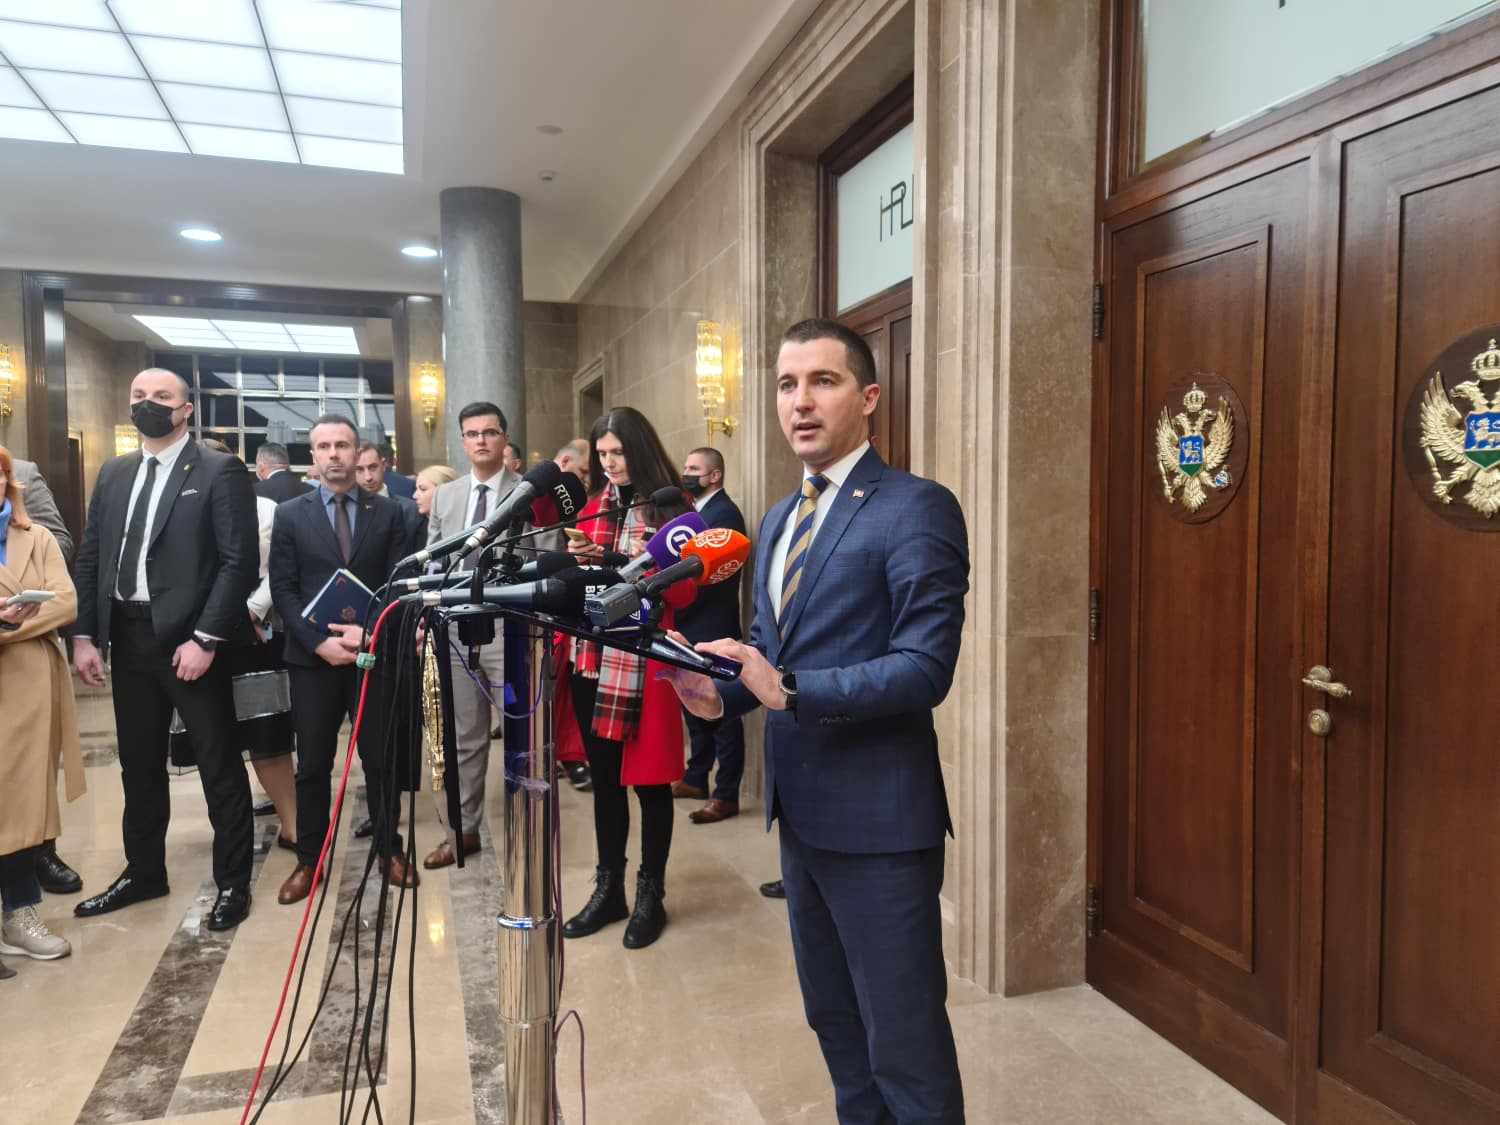 Bečić: Rješenje je razgovor unutar parlamentarne većine i manjinskih partija